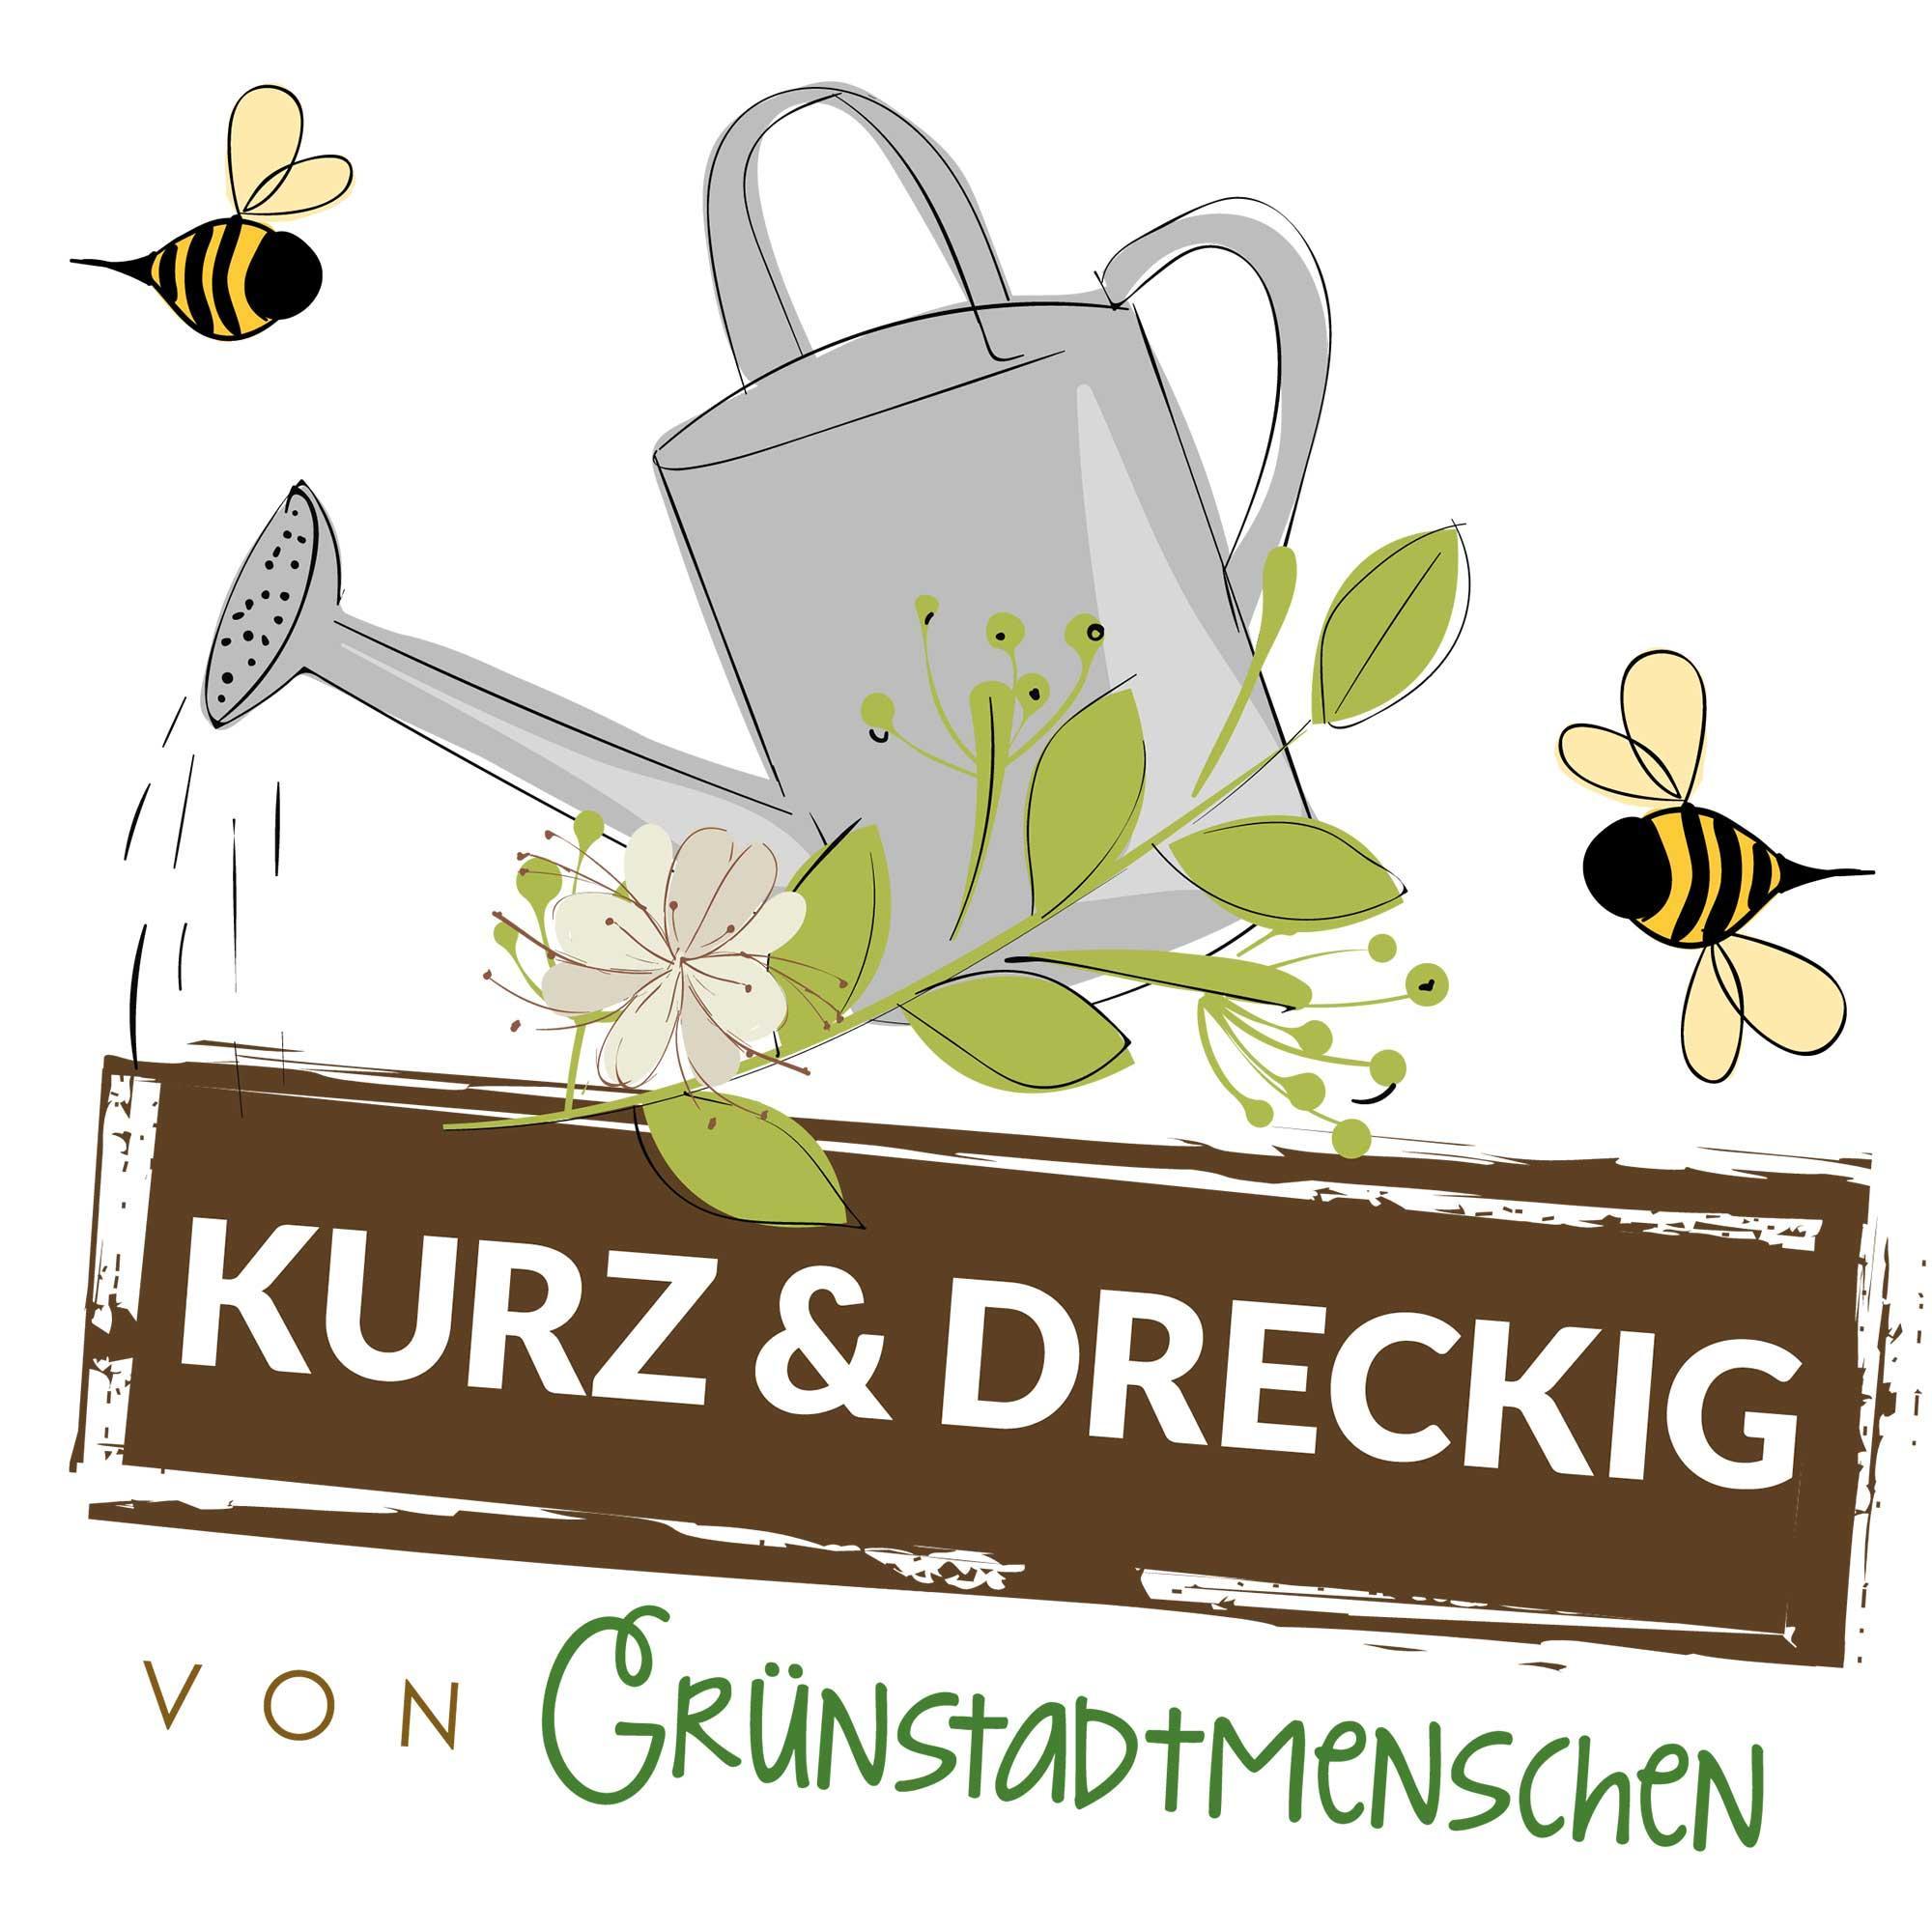 #39 Kurz & dreckig: Karinas Gartentipps für den August